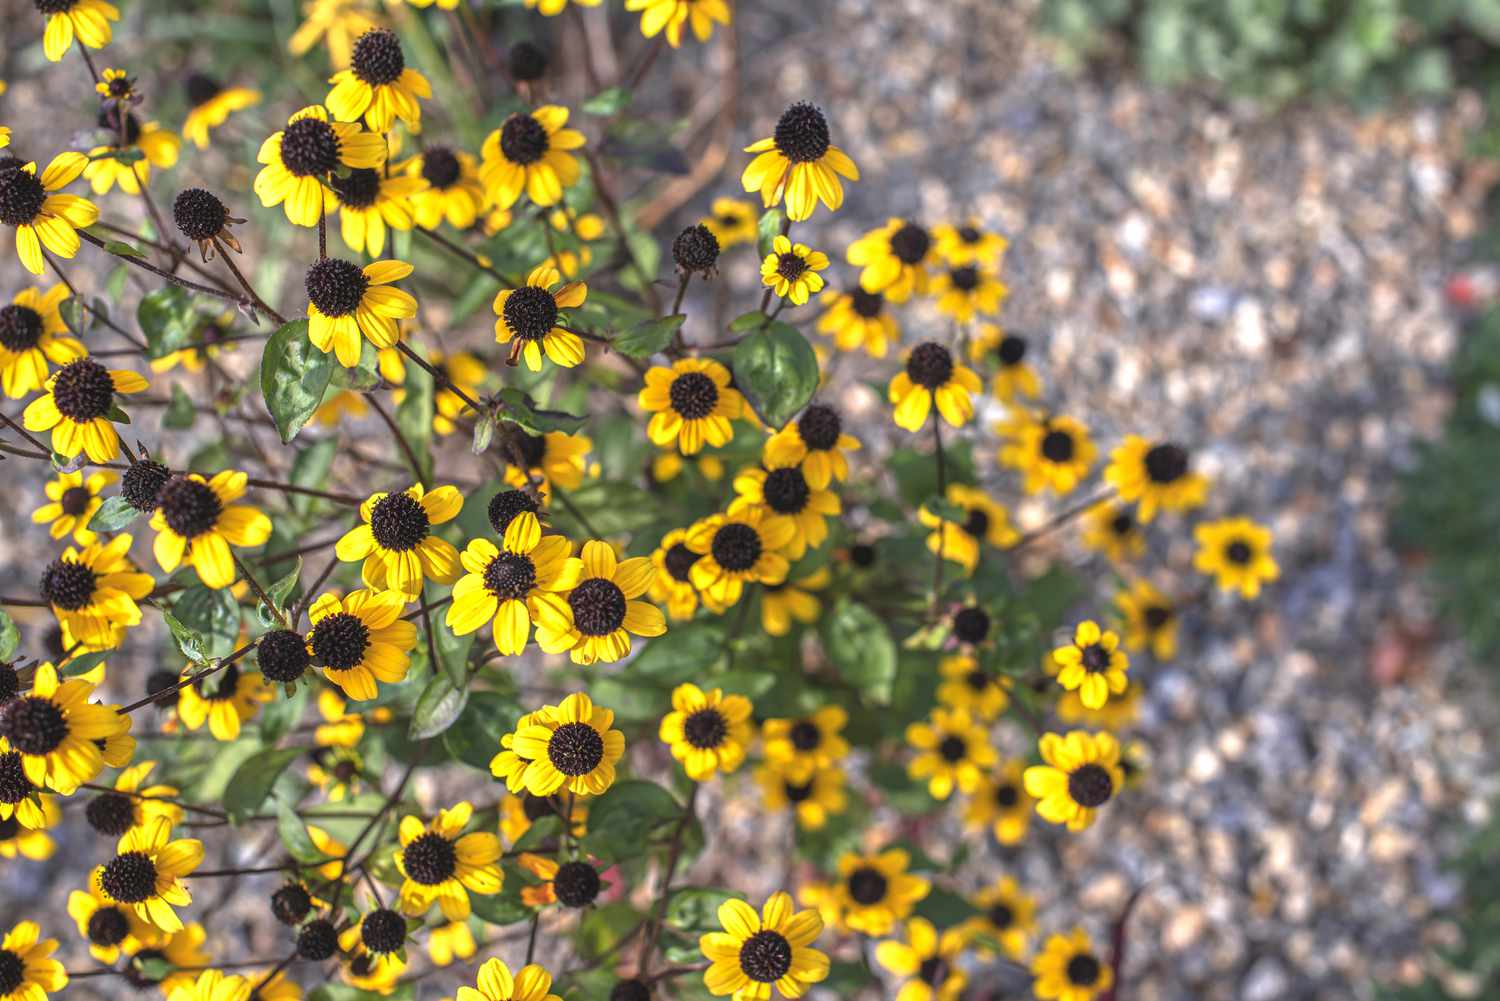 Braunäugige Susan Wildblumenpflanze mit kleinen gelben Blüten mit braunen knopfartigen Zentren auf dünnen Stängeln von oben